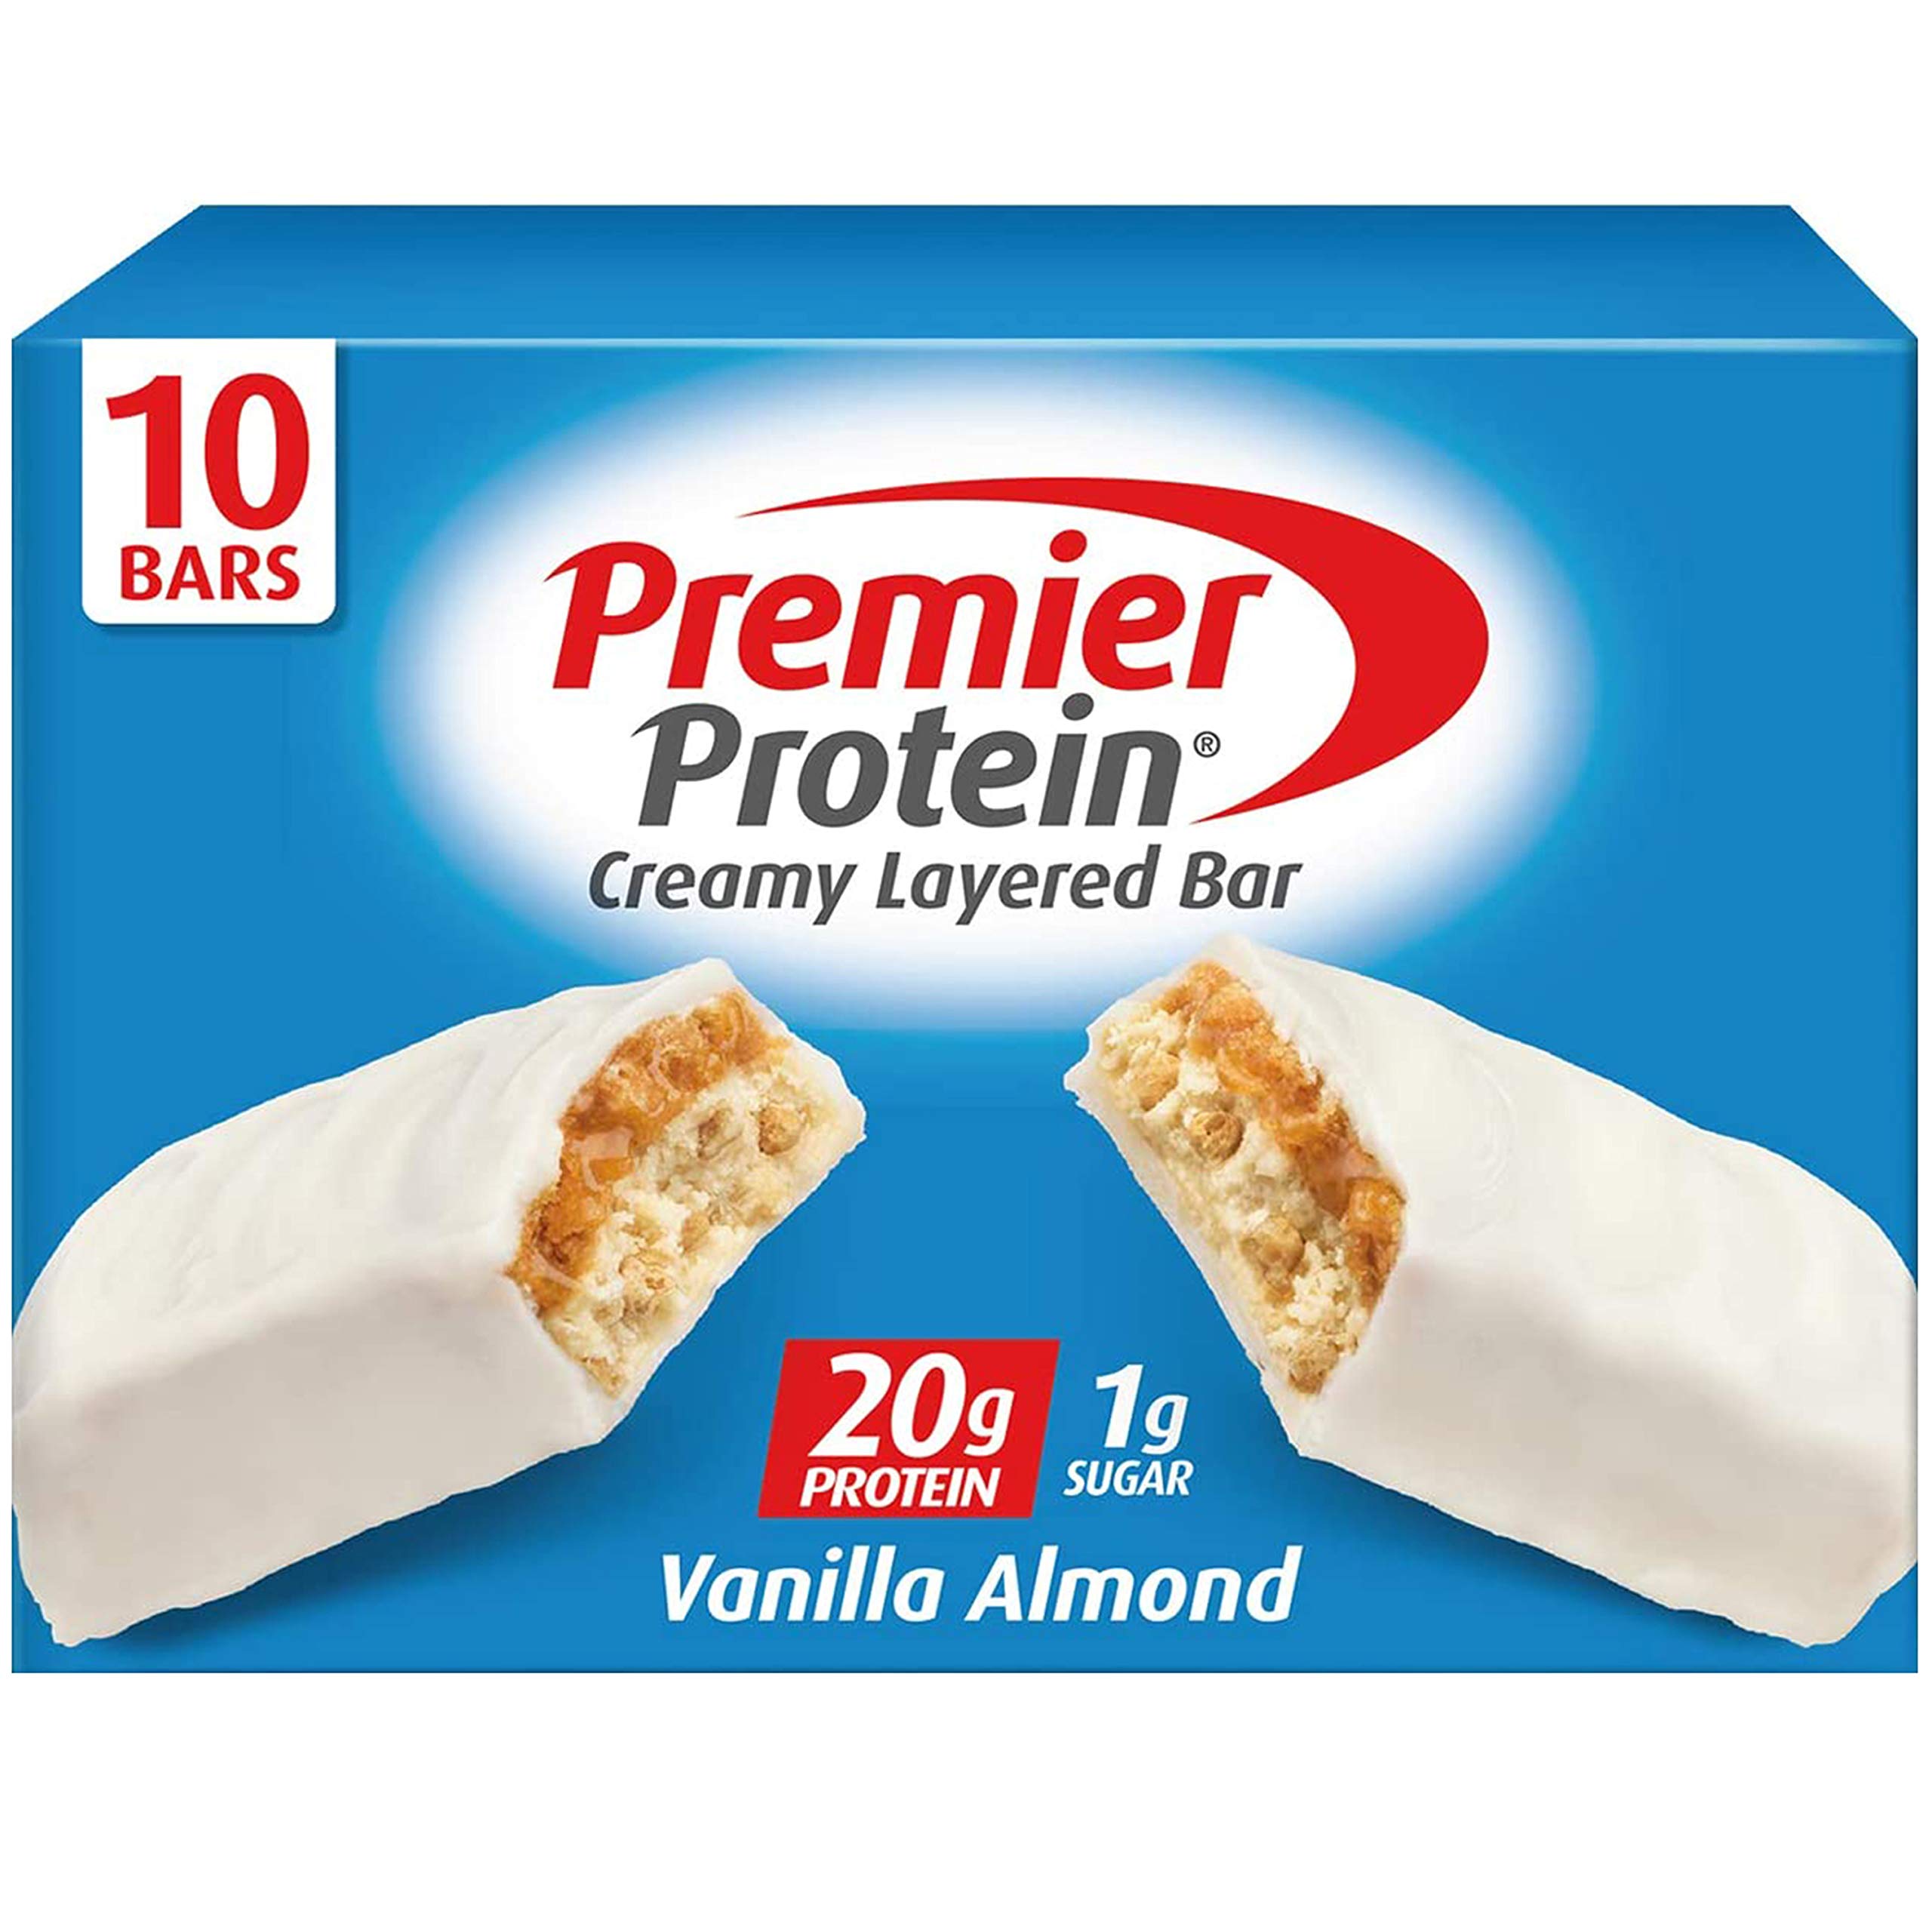 Premier Protein 20g Protein bar, Vanilla Almond, 10 Count